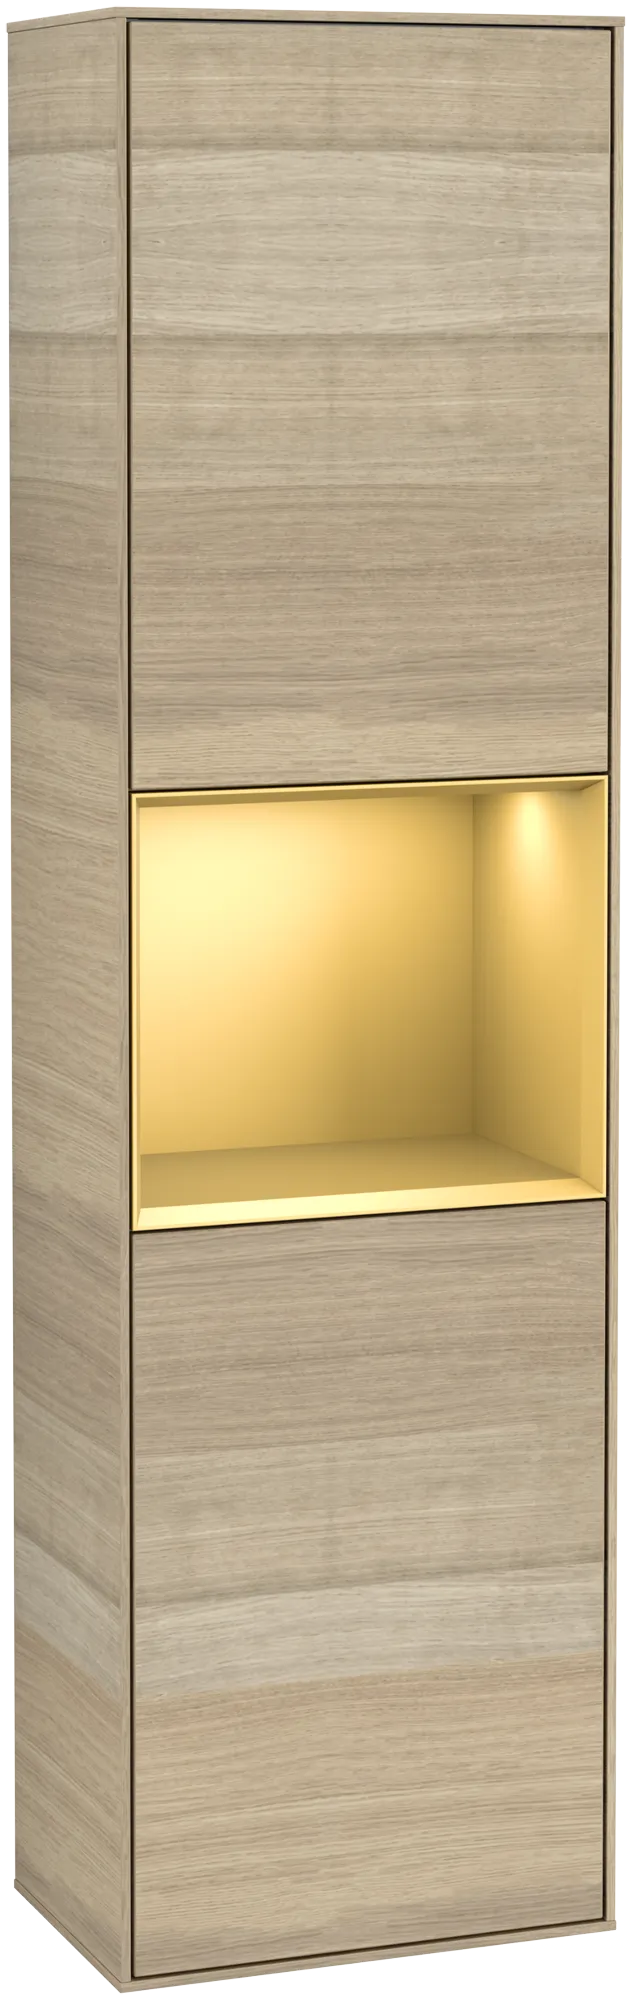 Bild von VILLEROY BOCH Finion Hochschrank, mit Beleuchtung, 2 Türen, 418 x 1516 x 270 mm, Oak Veneer / Gold Matt Lacquer #G470HFPC